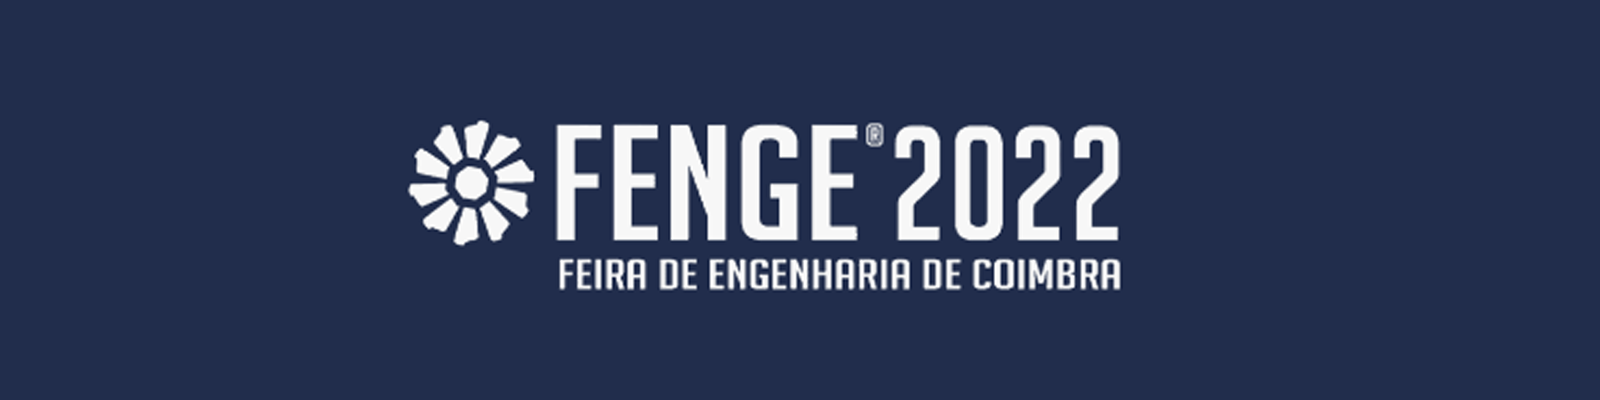 Coimbra engineering fair